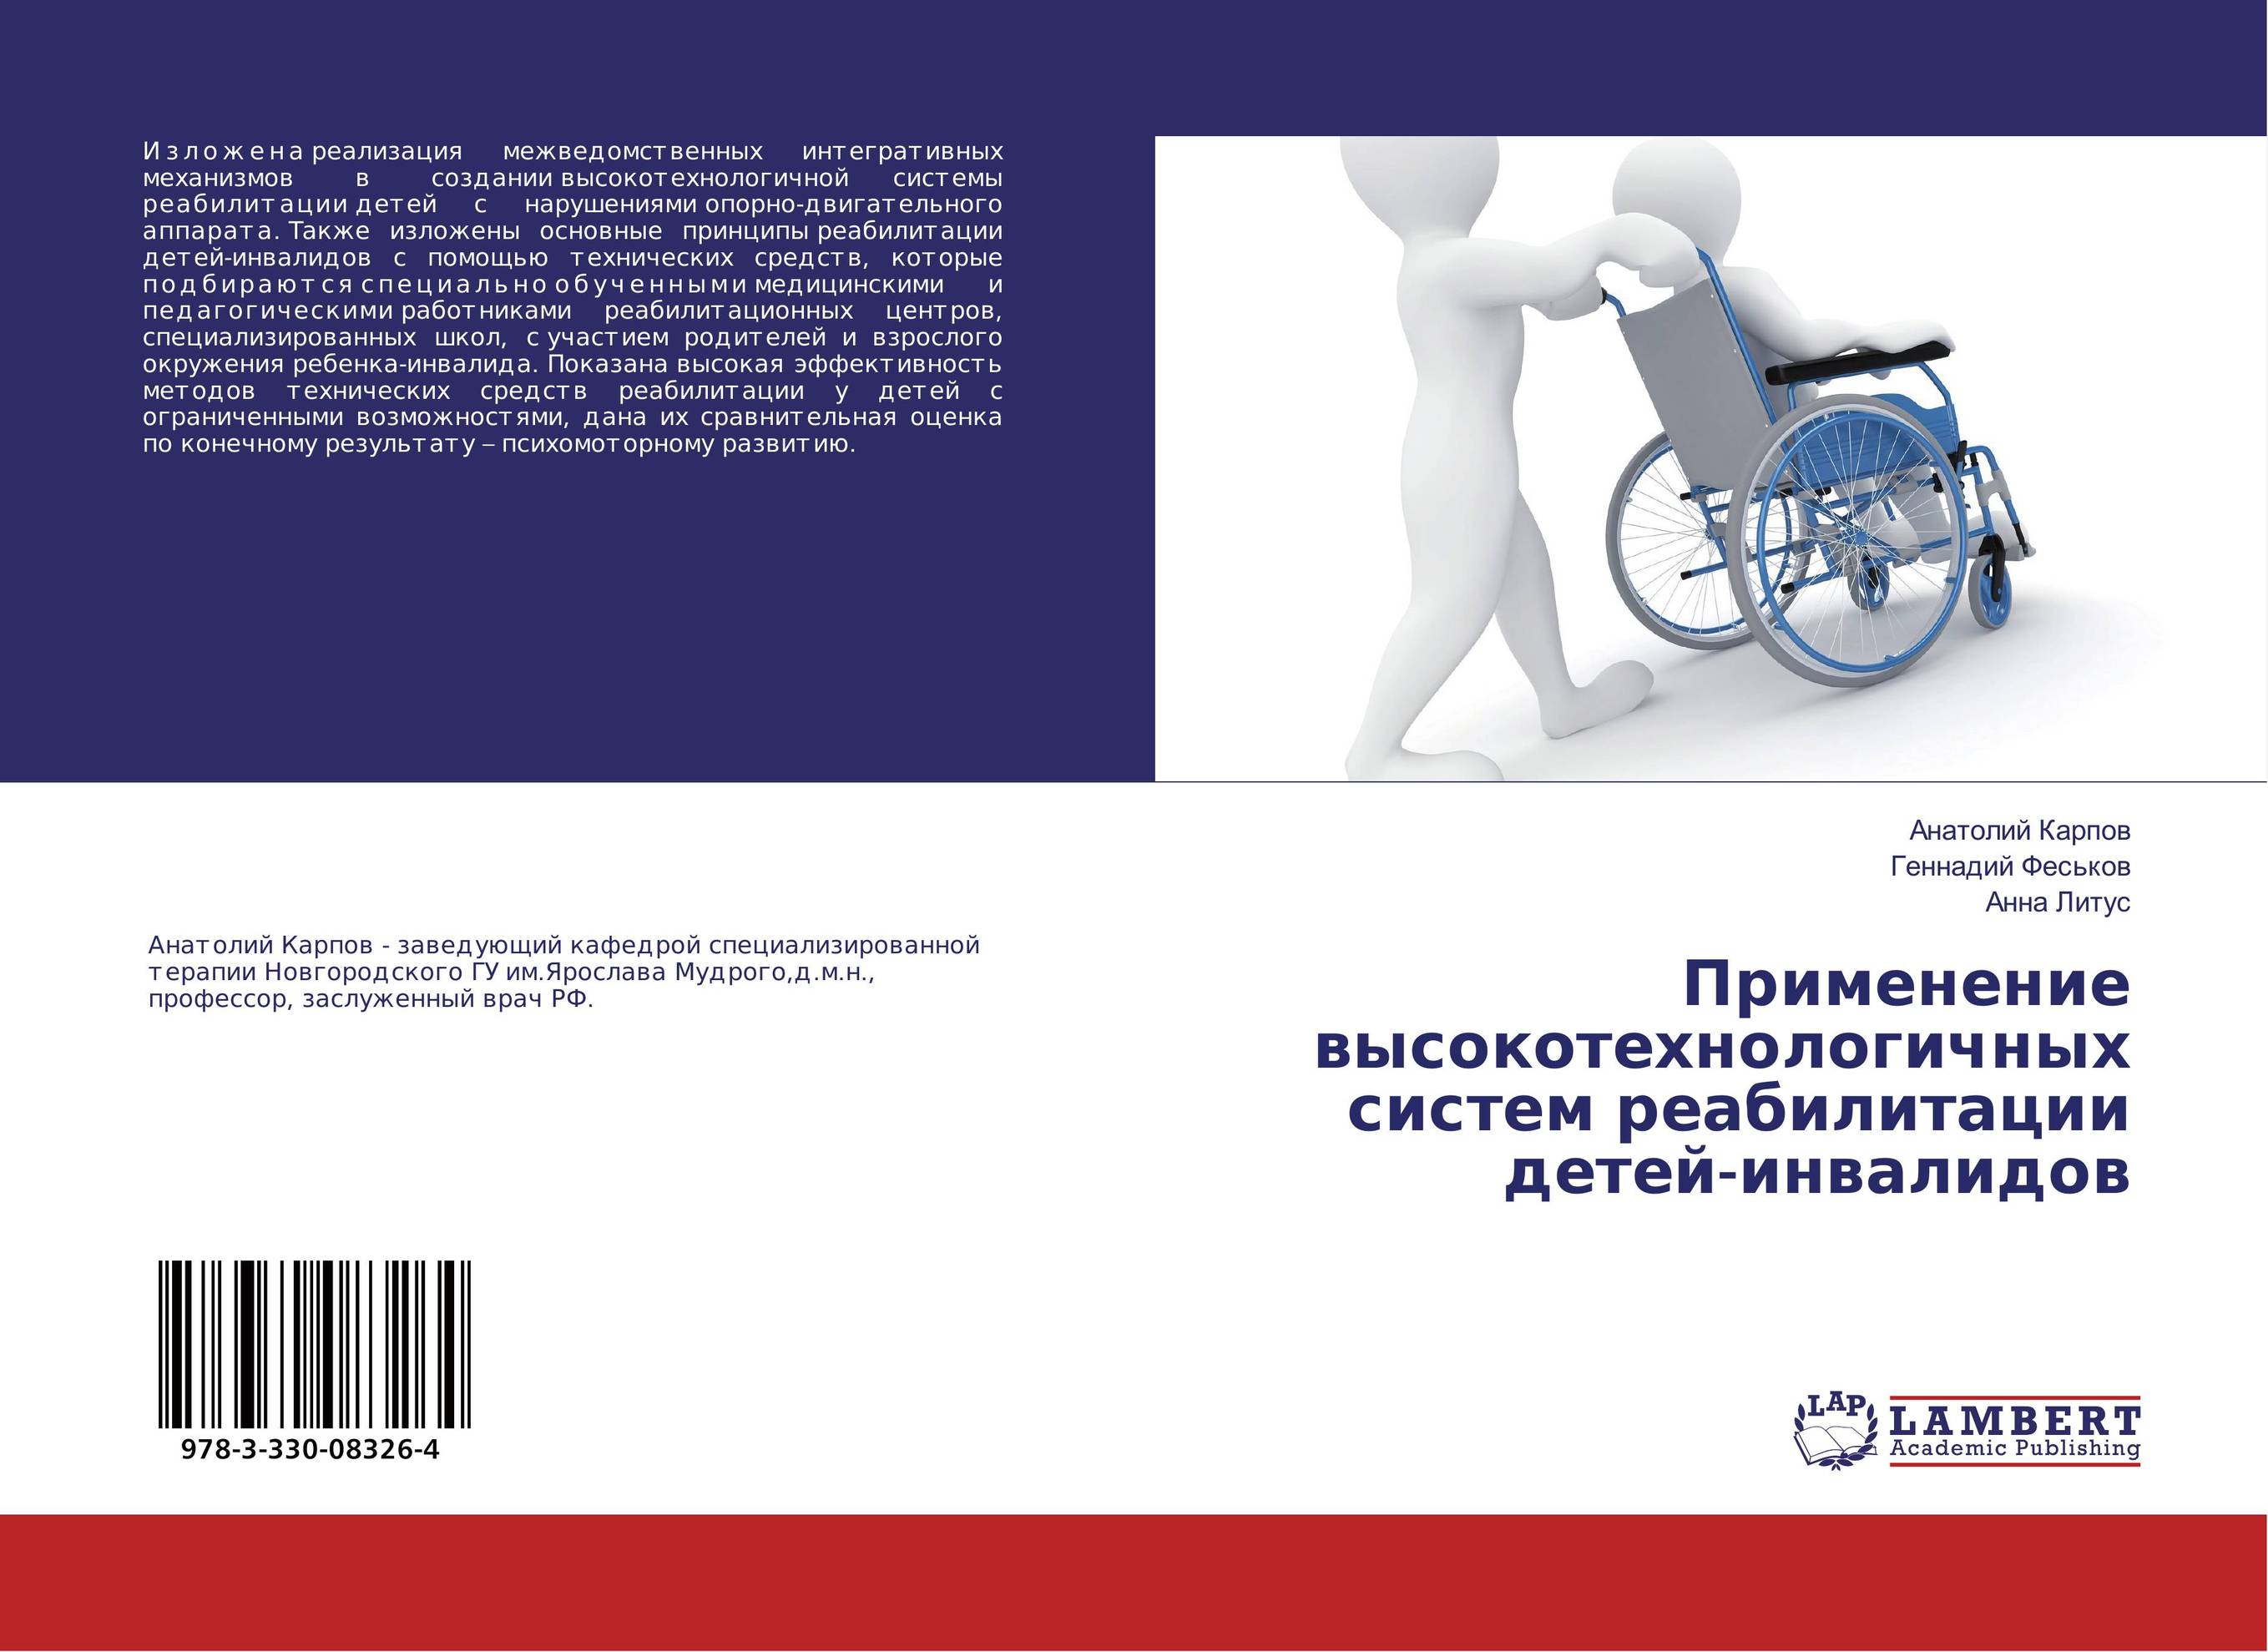 
        Применение высокотехнологичных систем реабилитации детей-инвалидов..
      